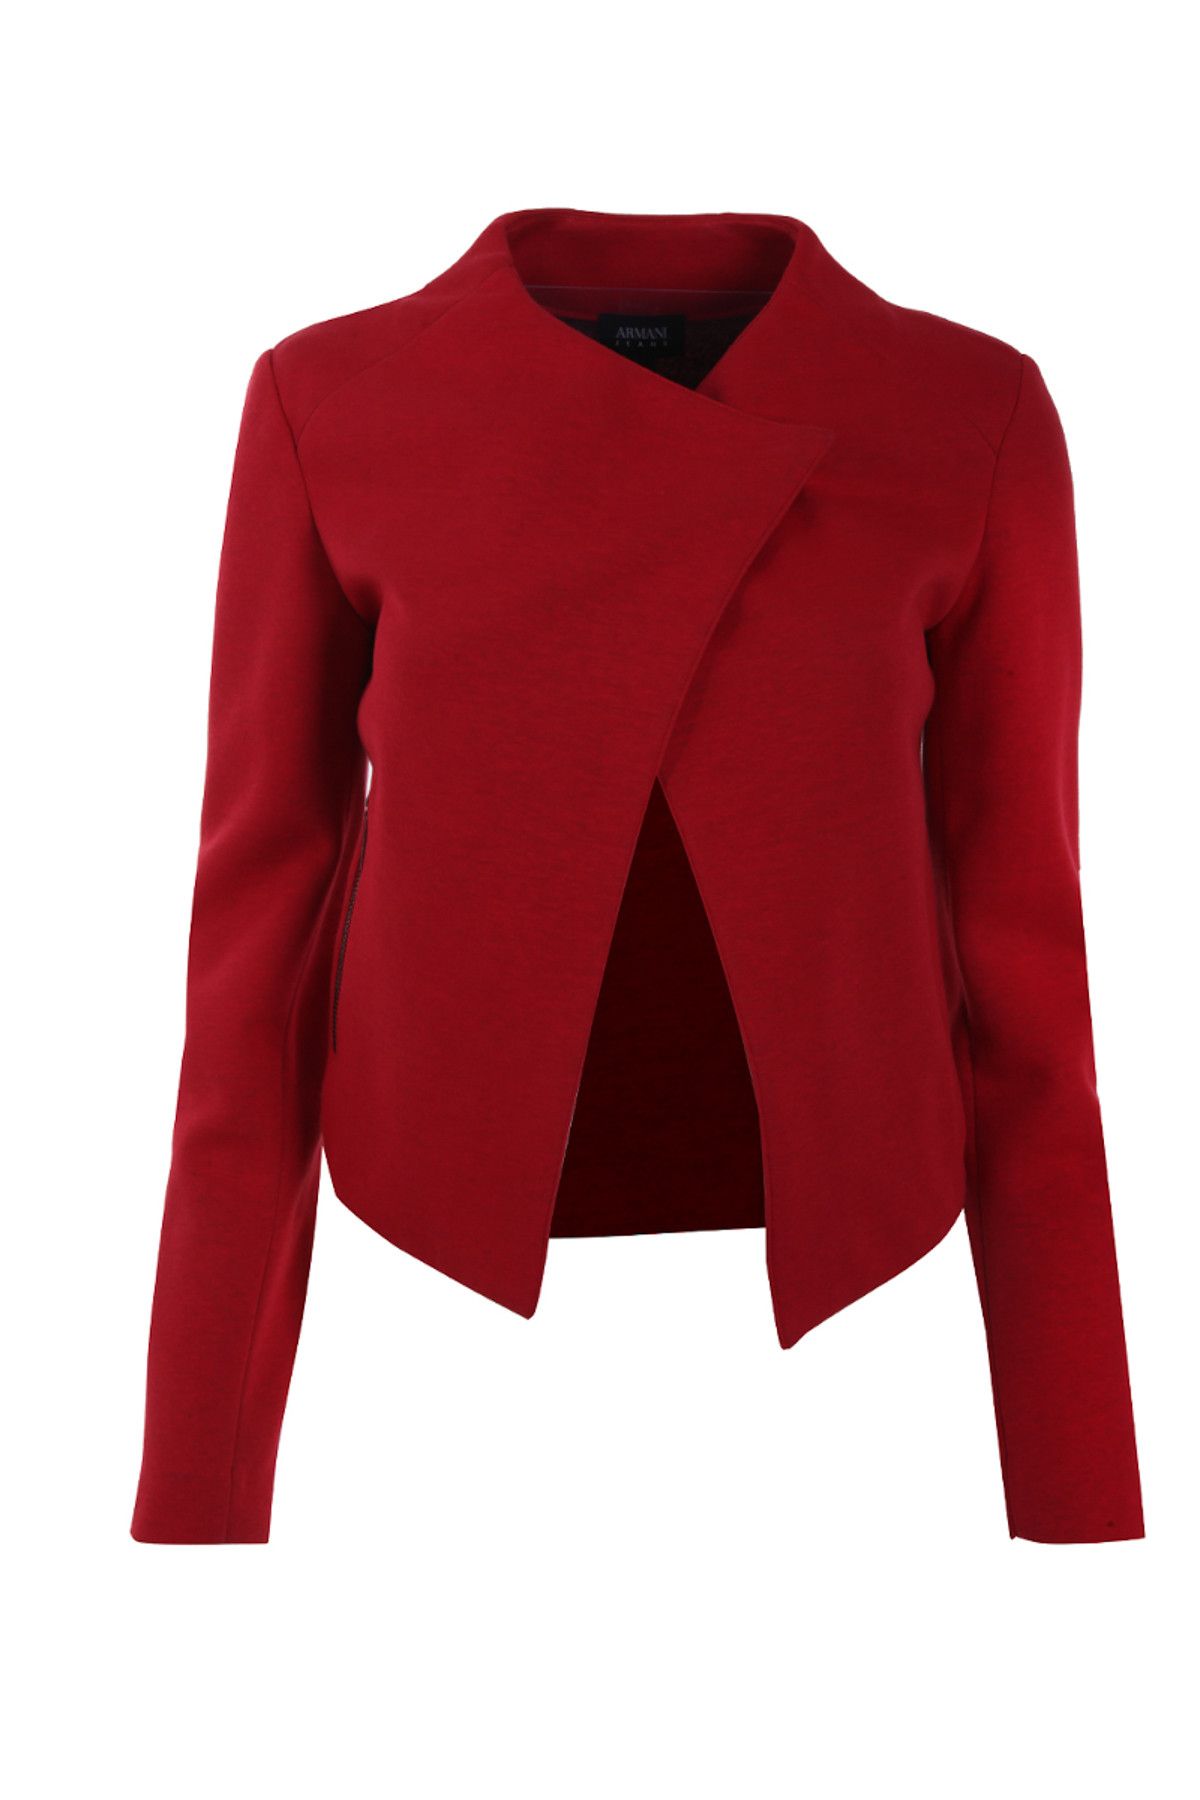 Armani Jeans Kadın Kırmızı Ceket 5S723Y5G845Jzbzc1468.0